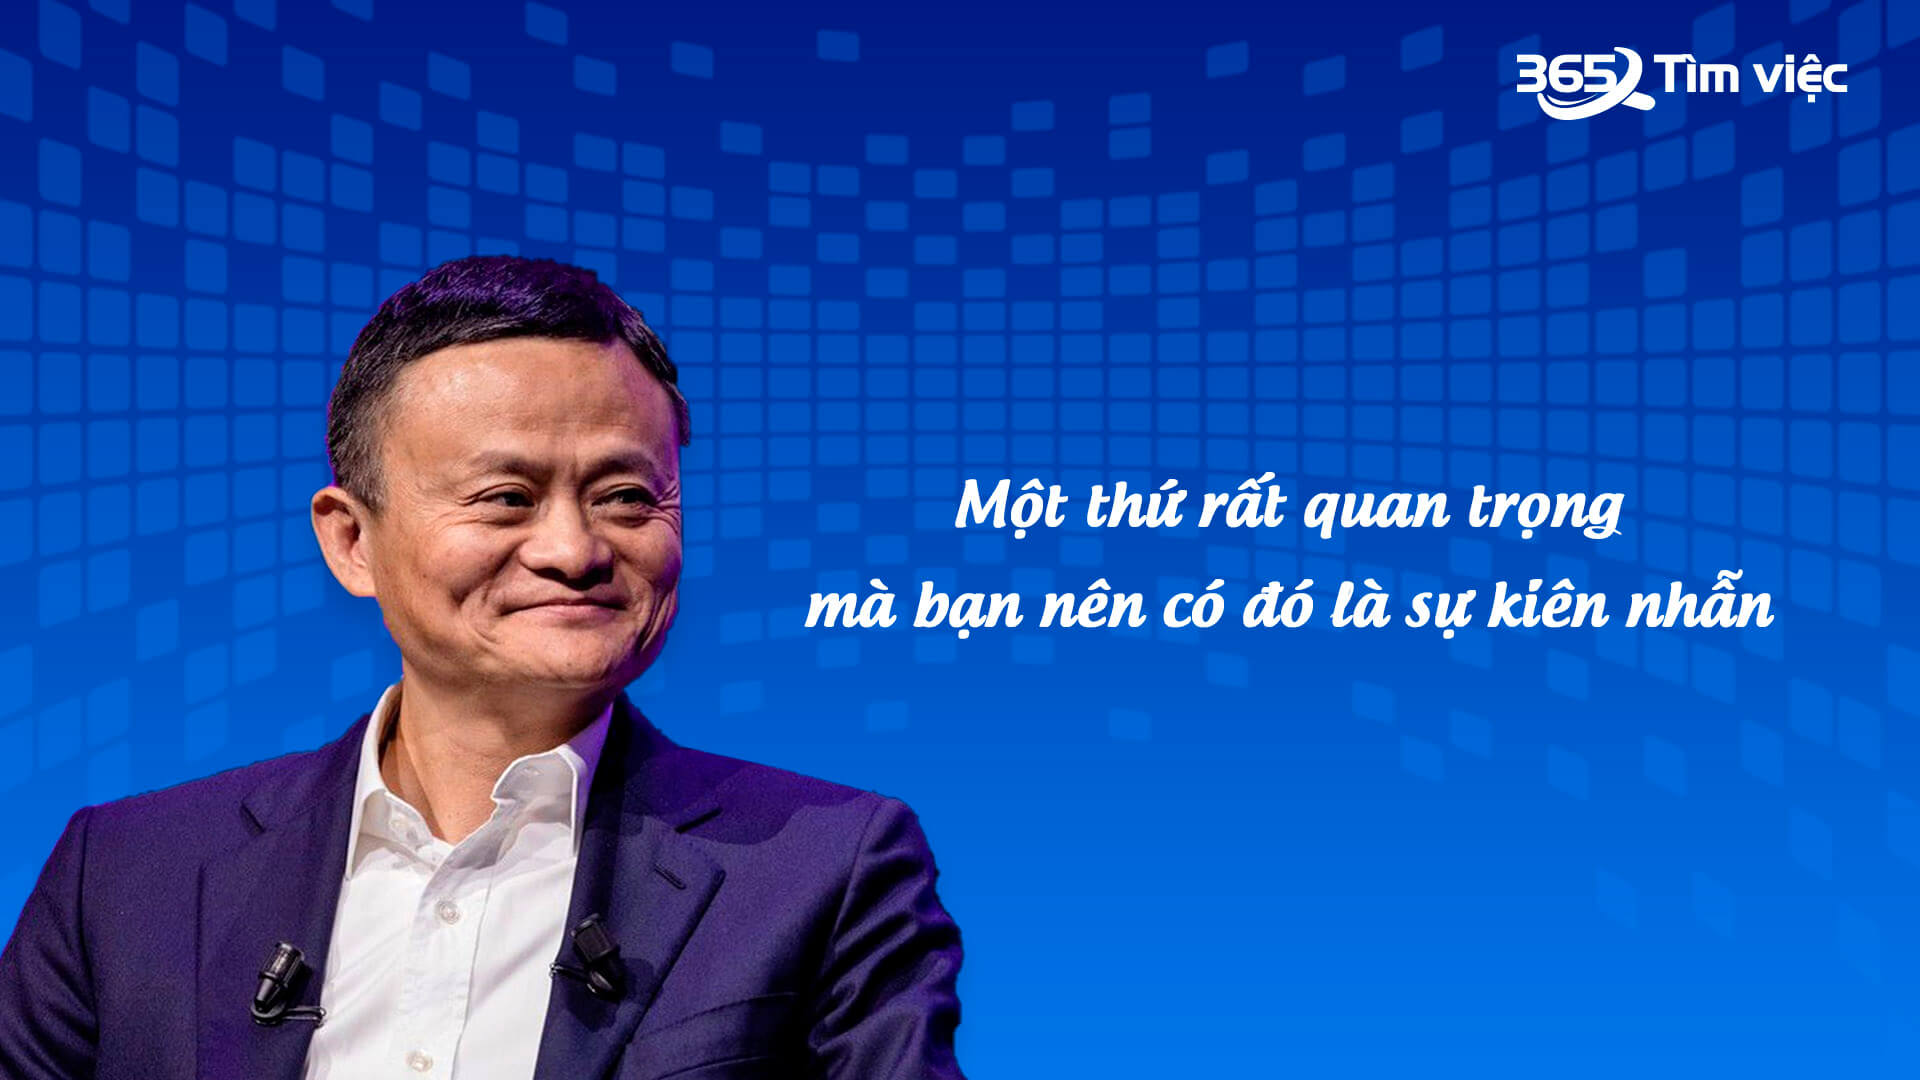 Jack Ma đang ở đâu và lý do đằng sau cú lao dốc của cổ phiếu Alibaba  Báo  Dân trí